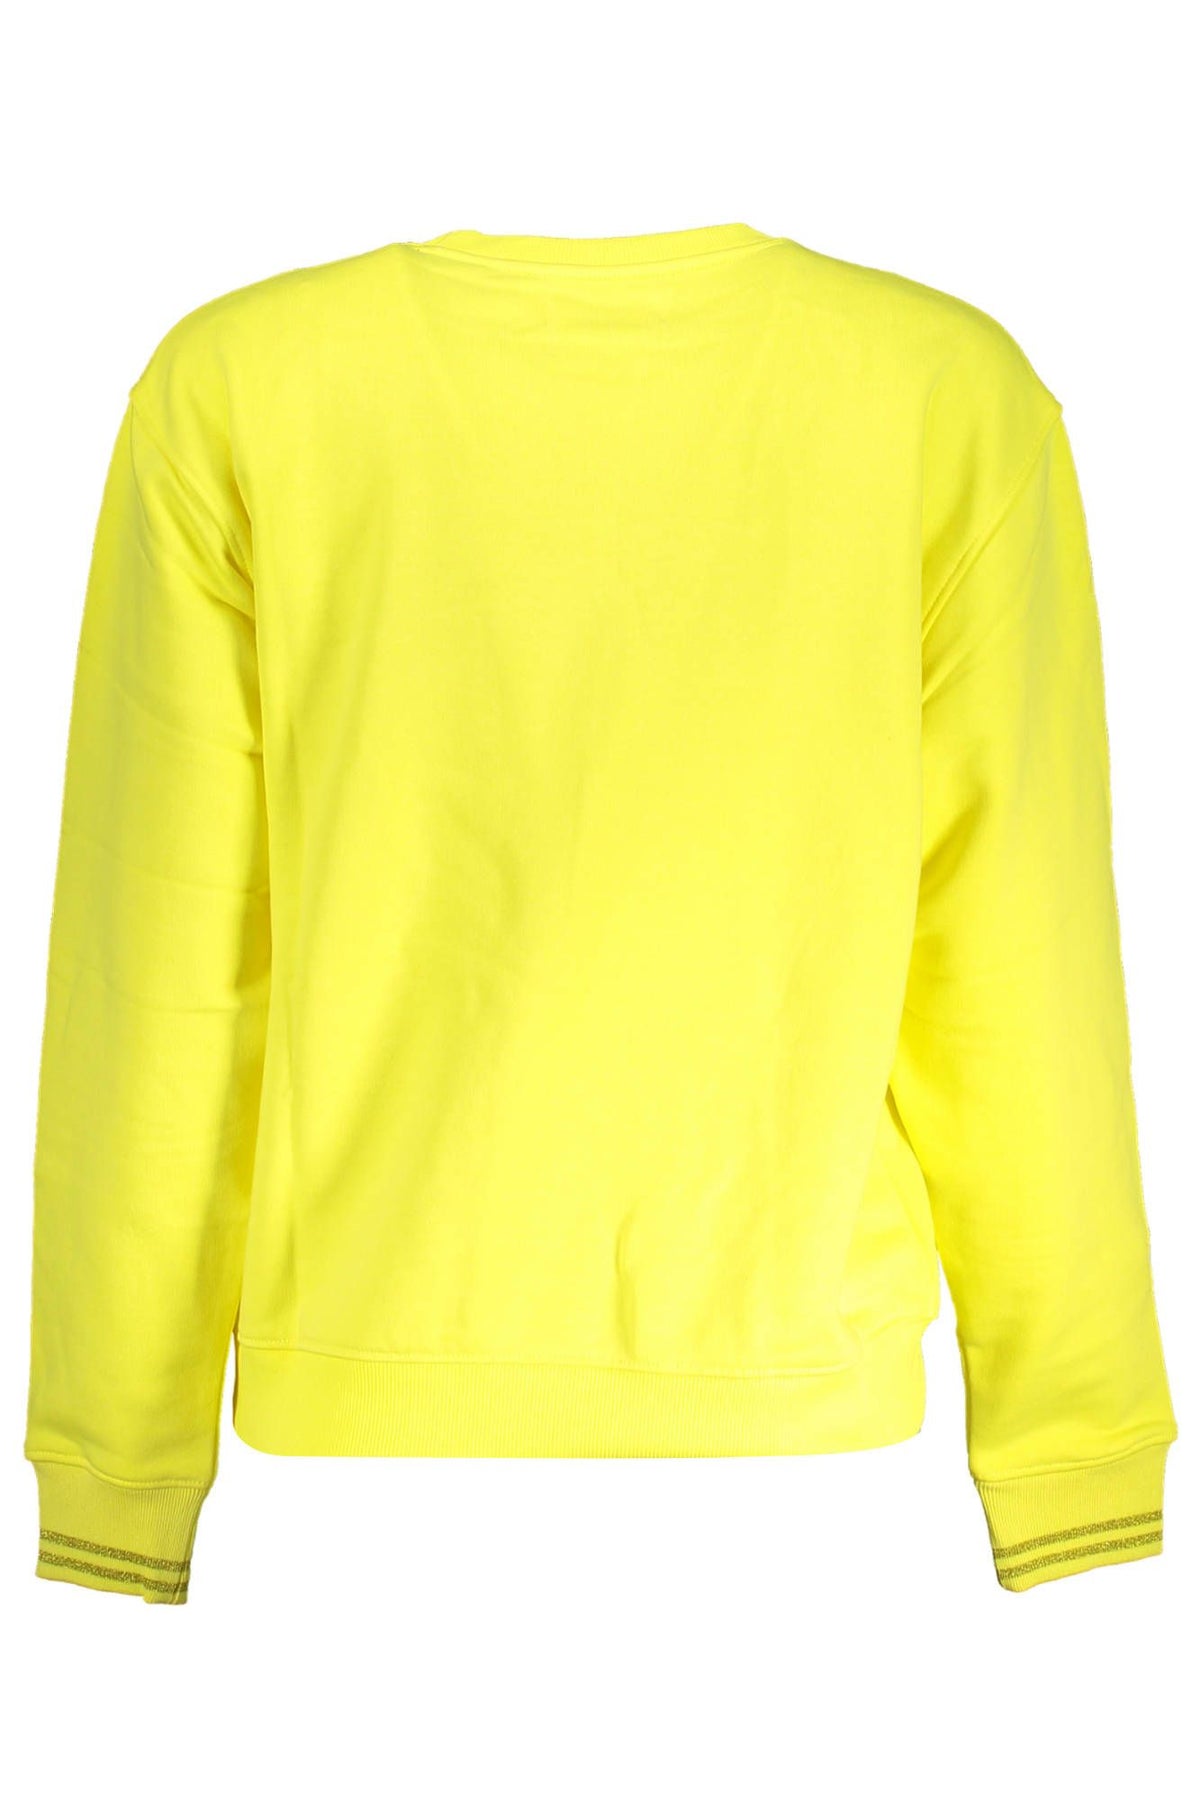 Leuchtend gelbes Desigual-Sweatshirt